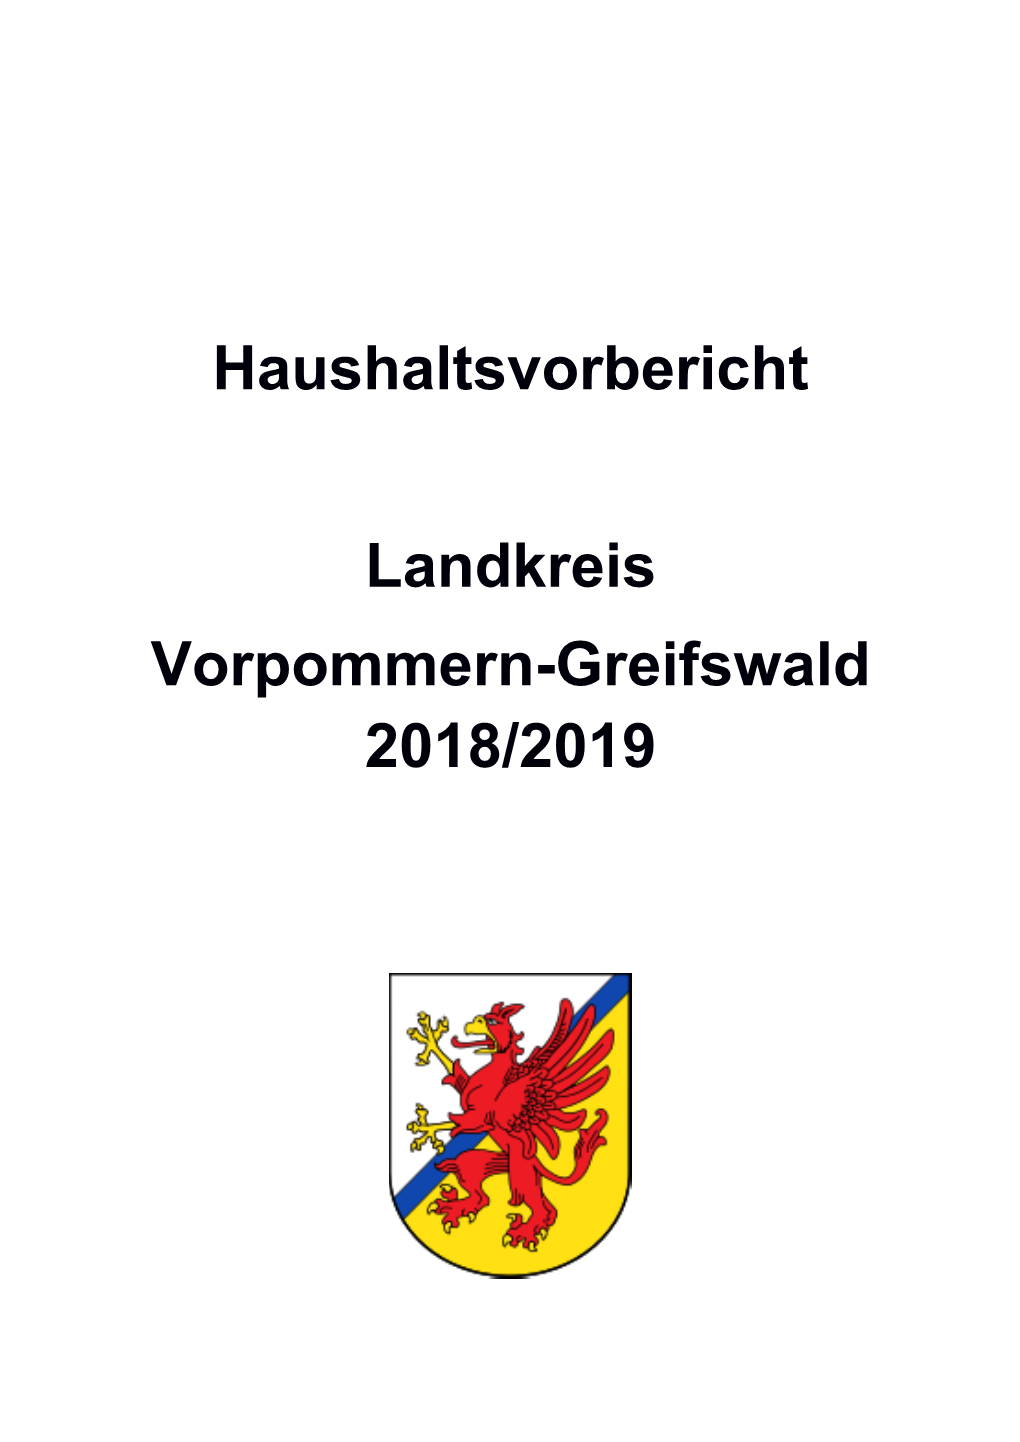 Haushaltsvorbericht Landkreis Vorpommern-Greifswald 2018/2019